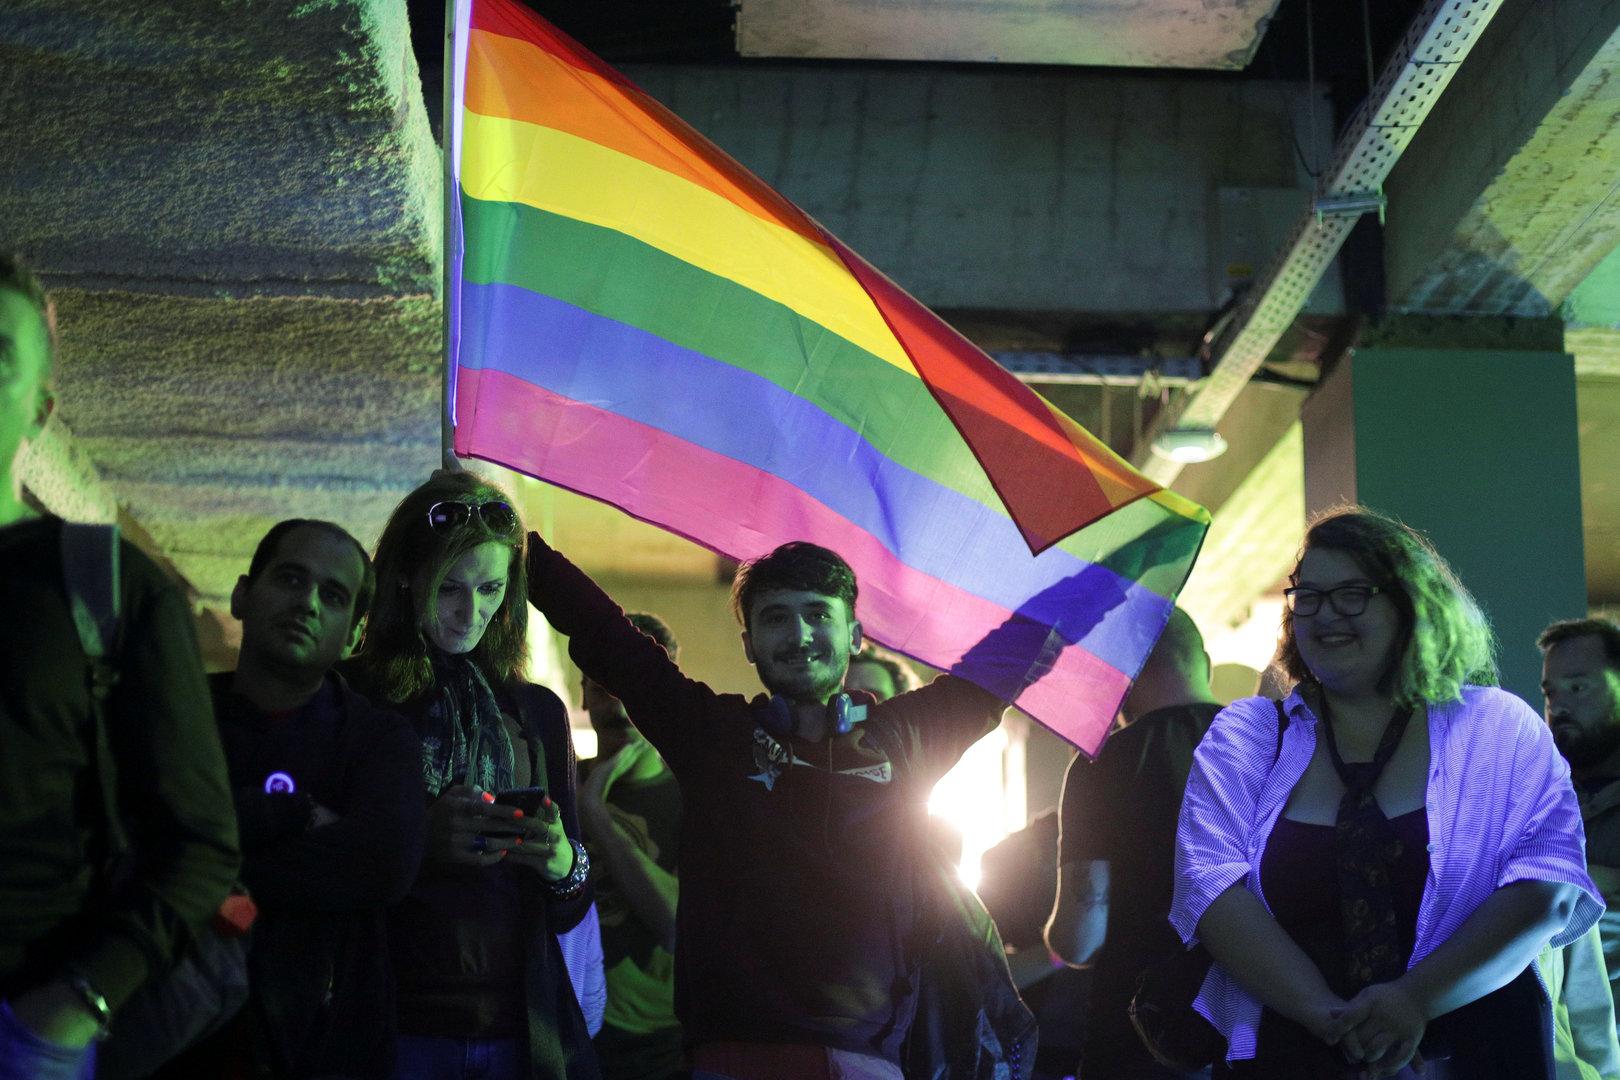 Rumänisches Referendum gegen Homo-Ehe gescheitert